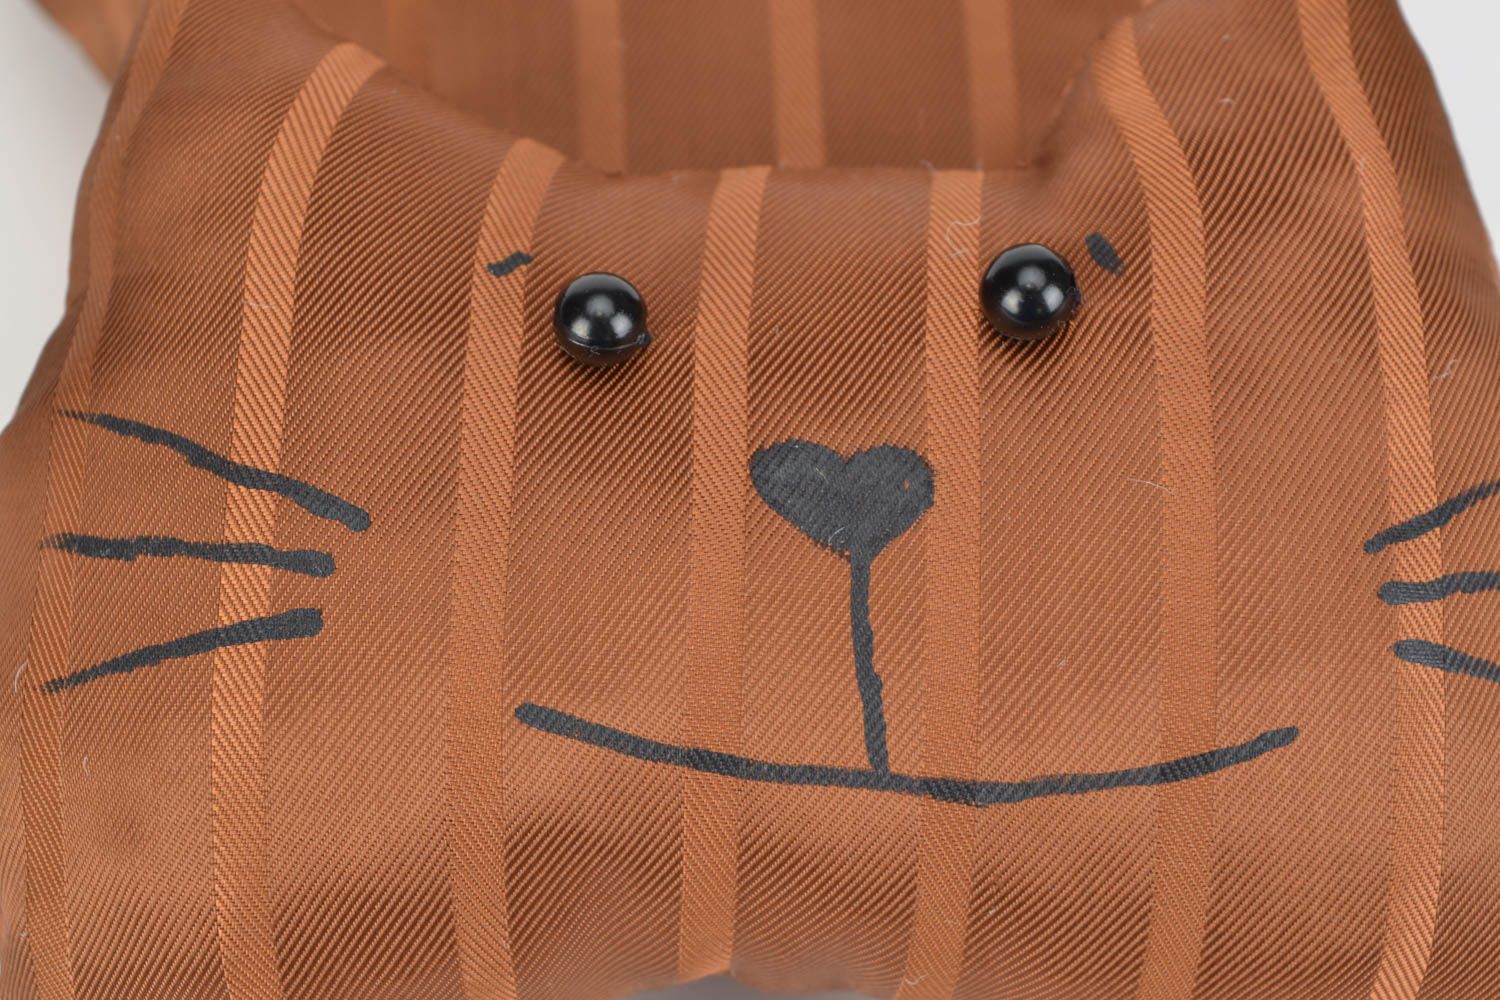 Игрушки-подушки для дома в виде кота с закрученным хвостом хэнд мэйд фото 4